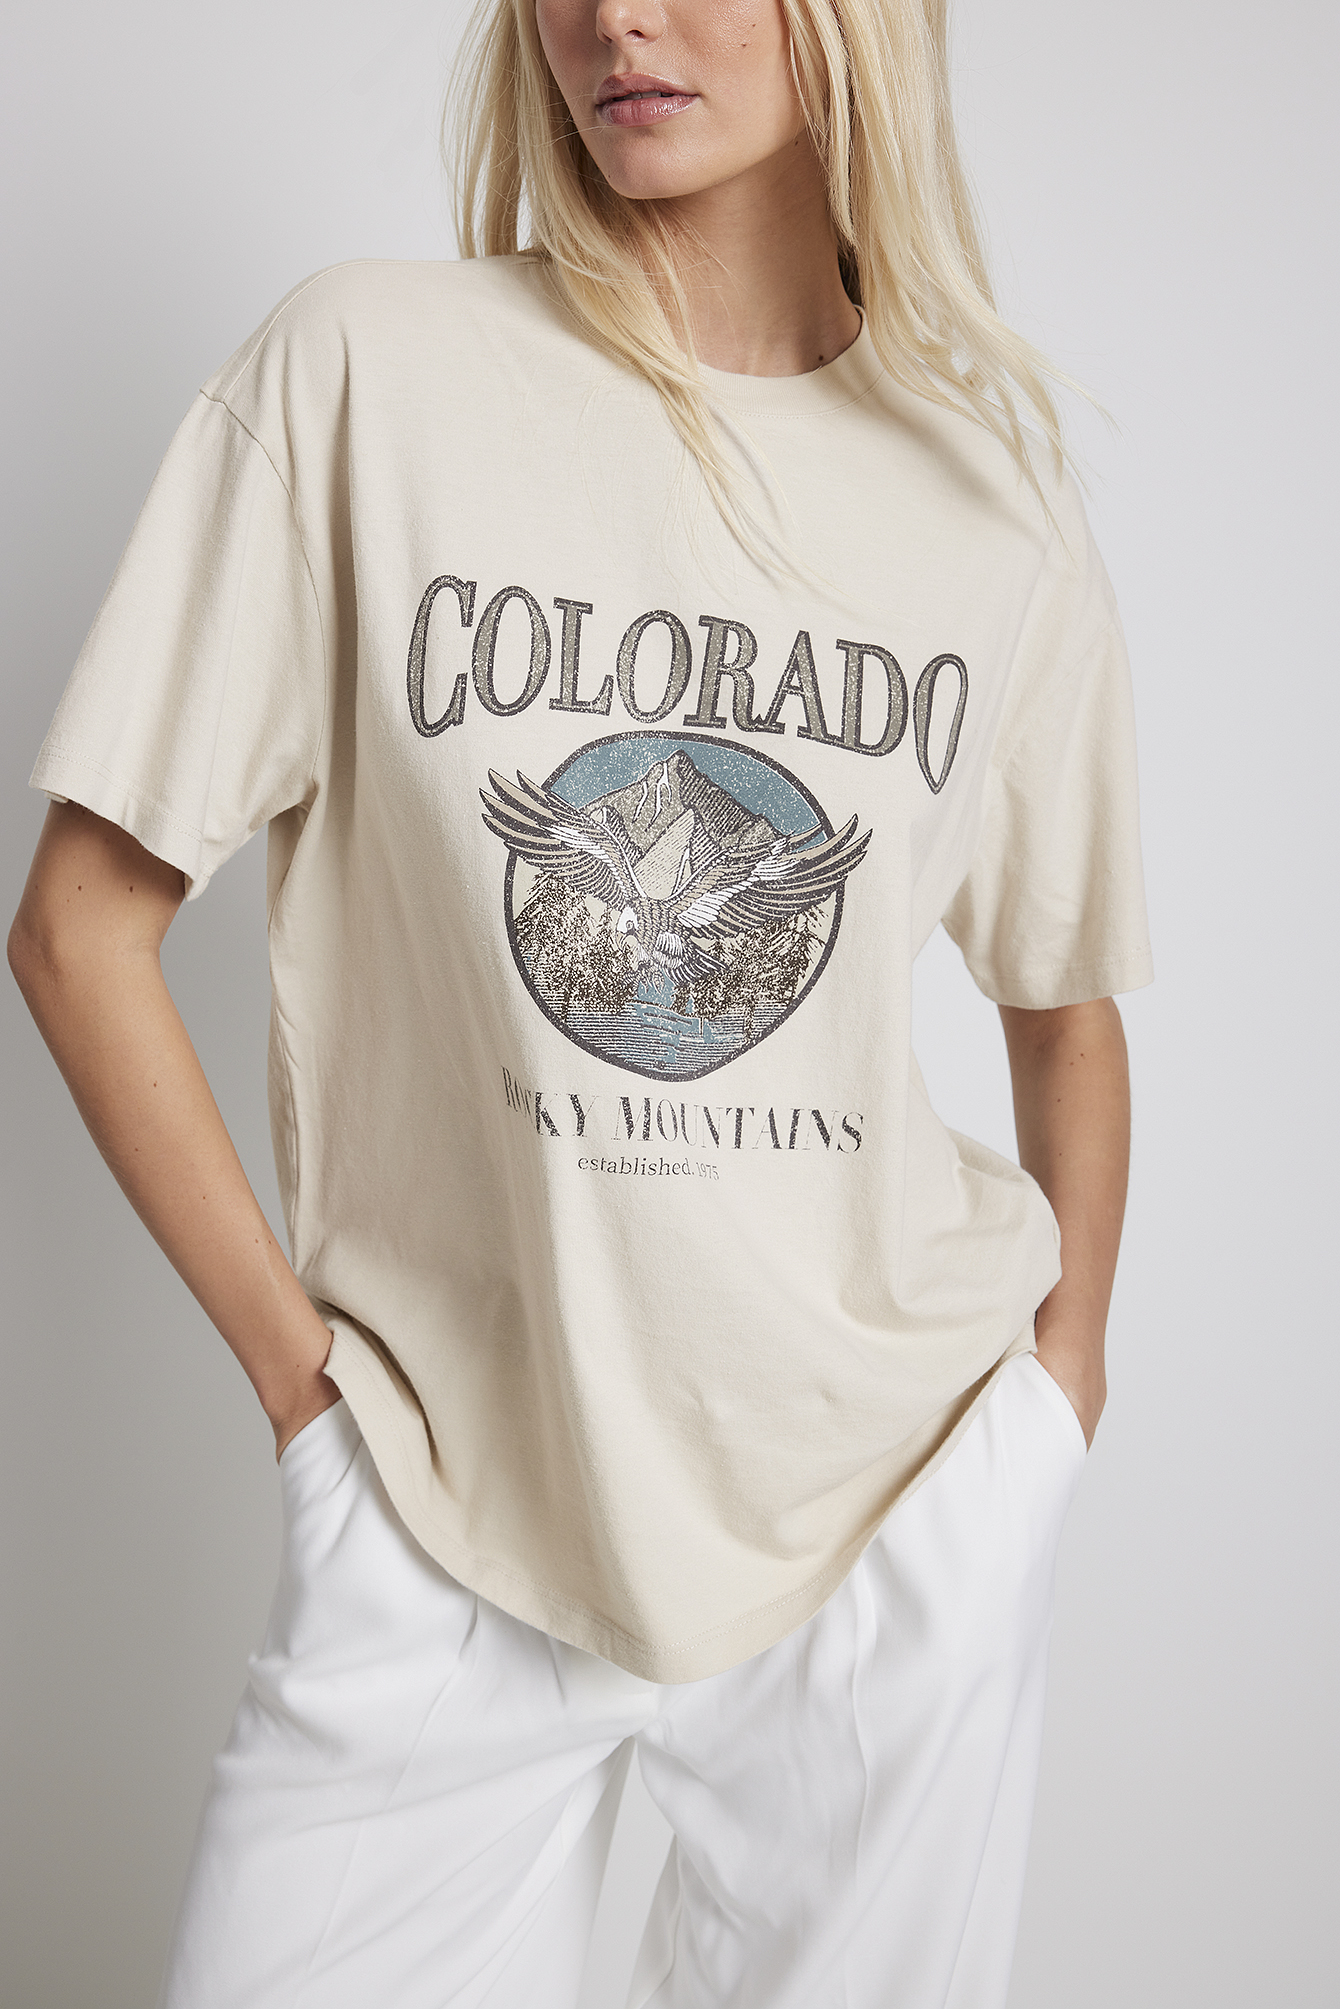 Light Beige T-shirt à imprimé Colorado